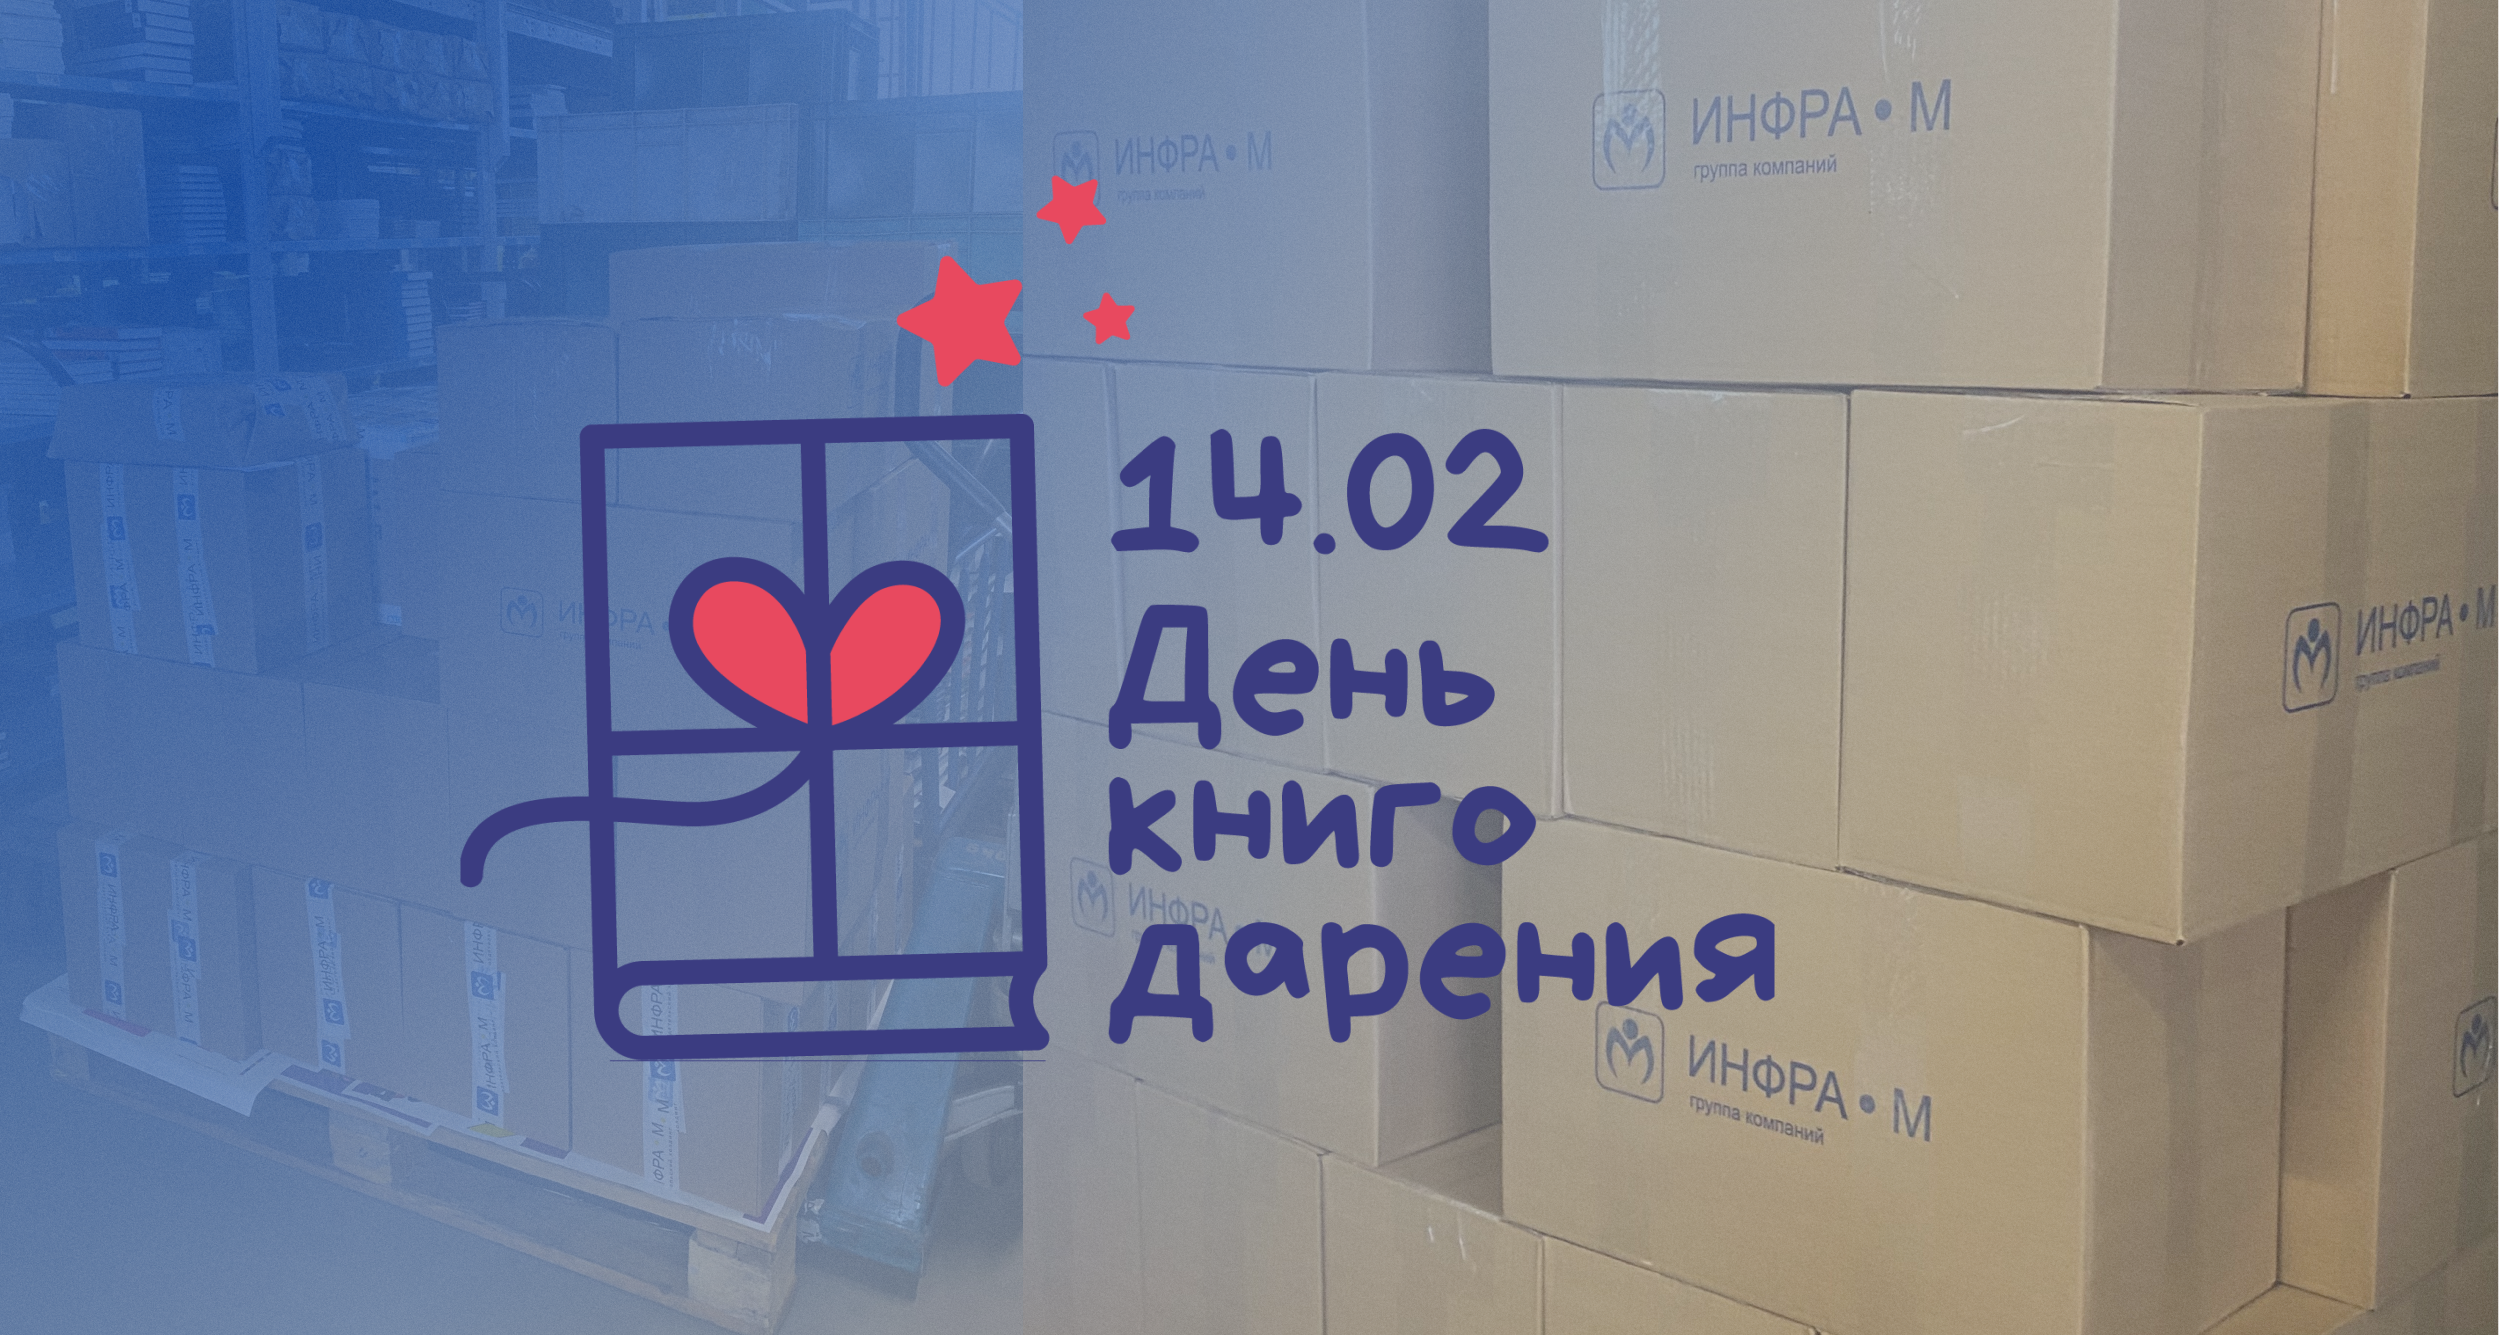 Издательский холдинг ИНФРА-М собрал более 2000 книг на благотворительность к акции «Дарите книги с любовью».
 Мы собрали более 2000 книг к дню книгодарения | Новости | Znanium.ru